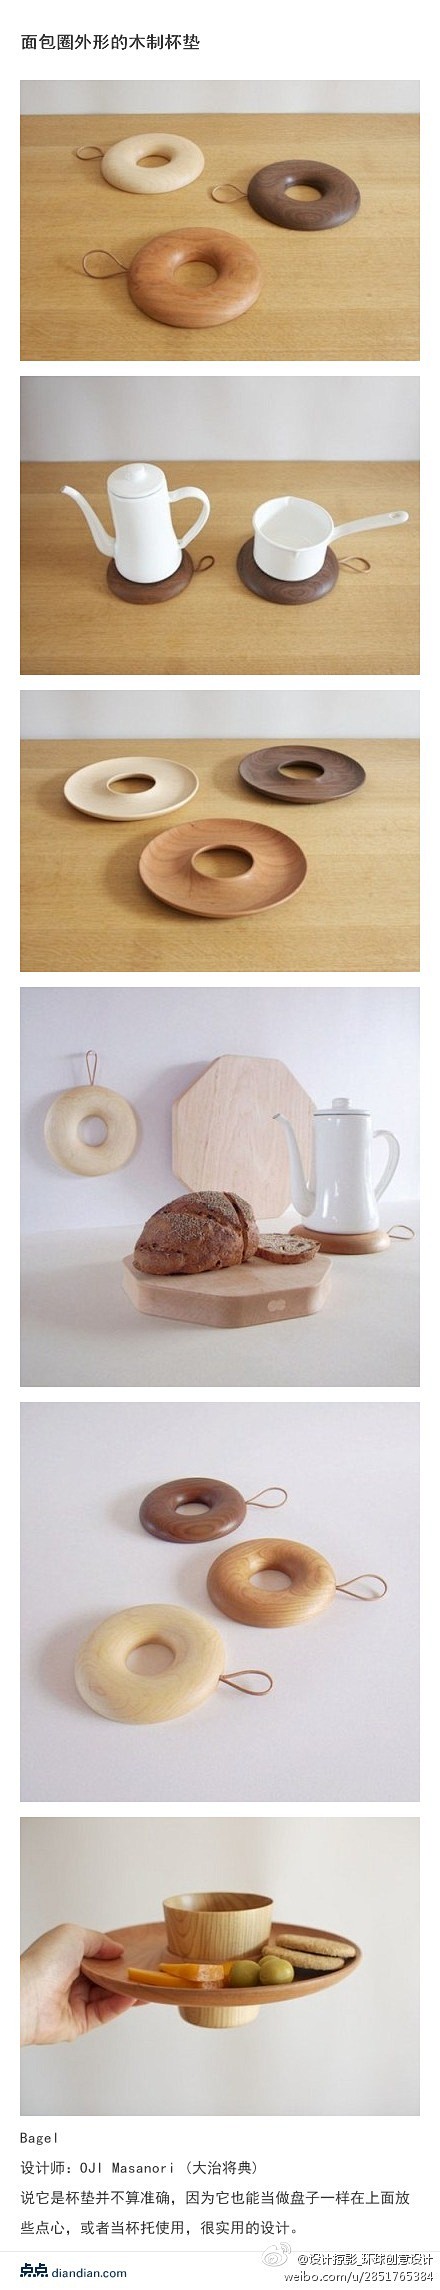 面包圈外形的木制杯垫Bagel 设计师：...